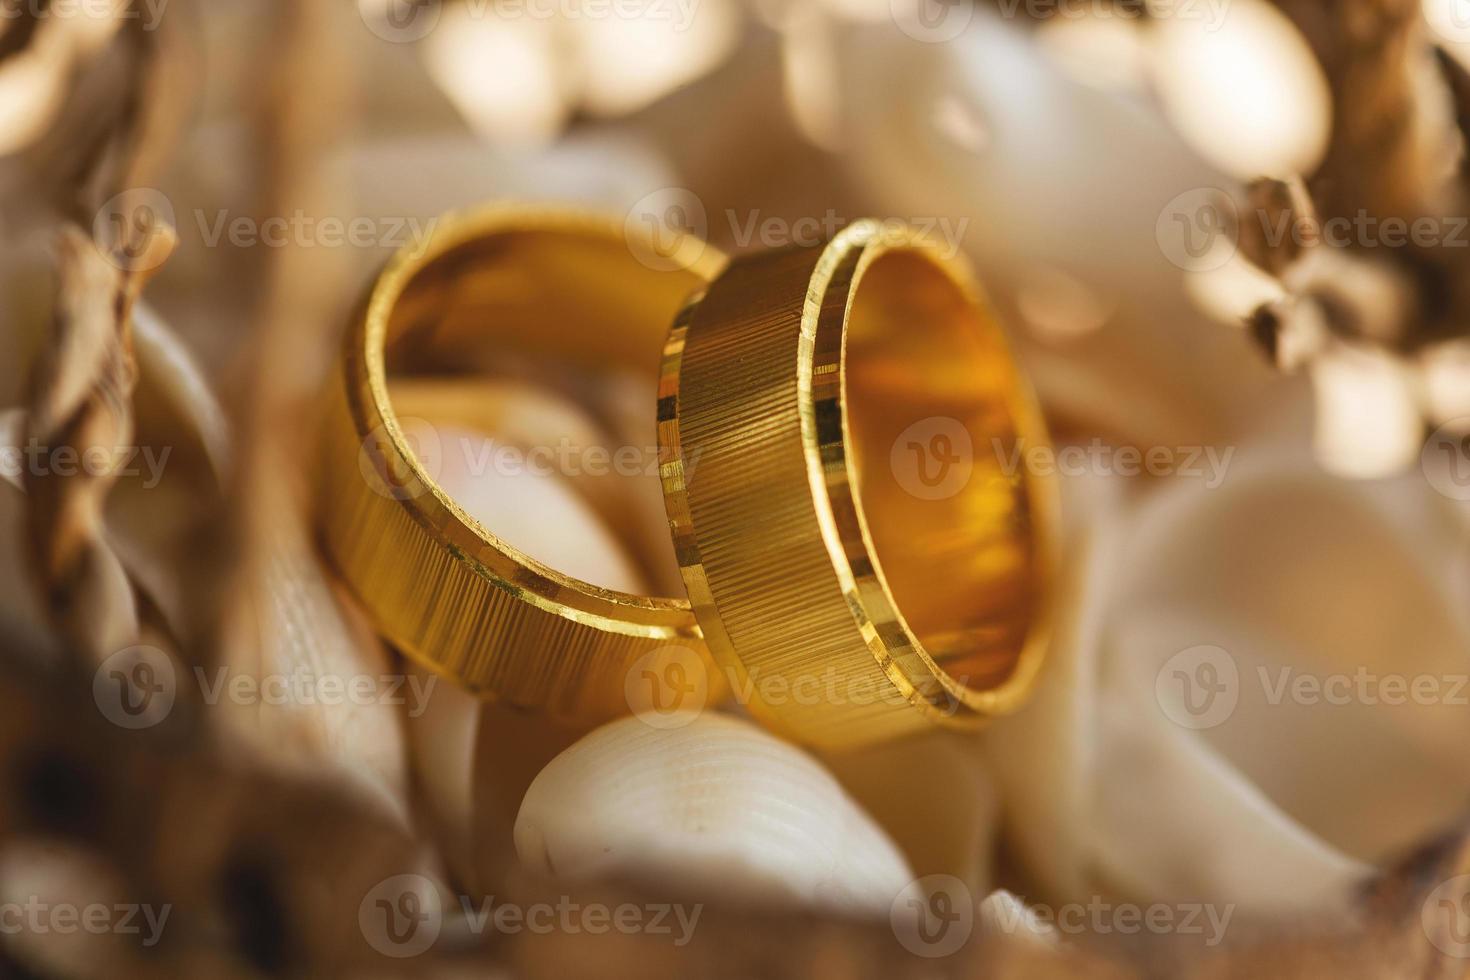 gros plan sur des anneaux de mariage dorés à l'intérieur d'une coquille de noix de coco photo